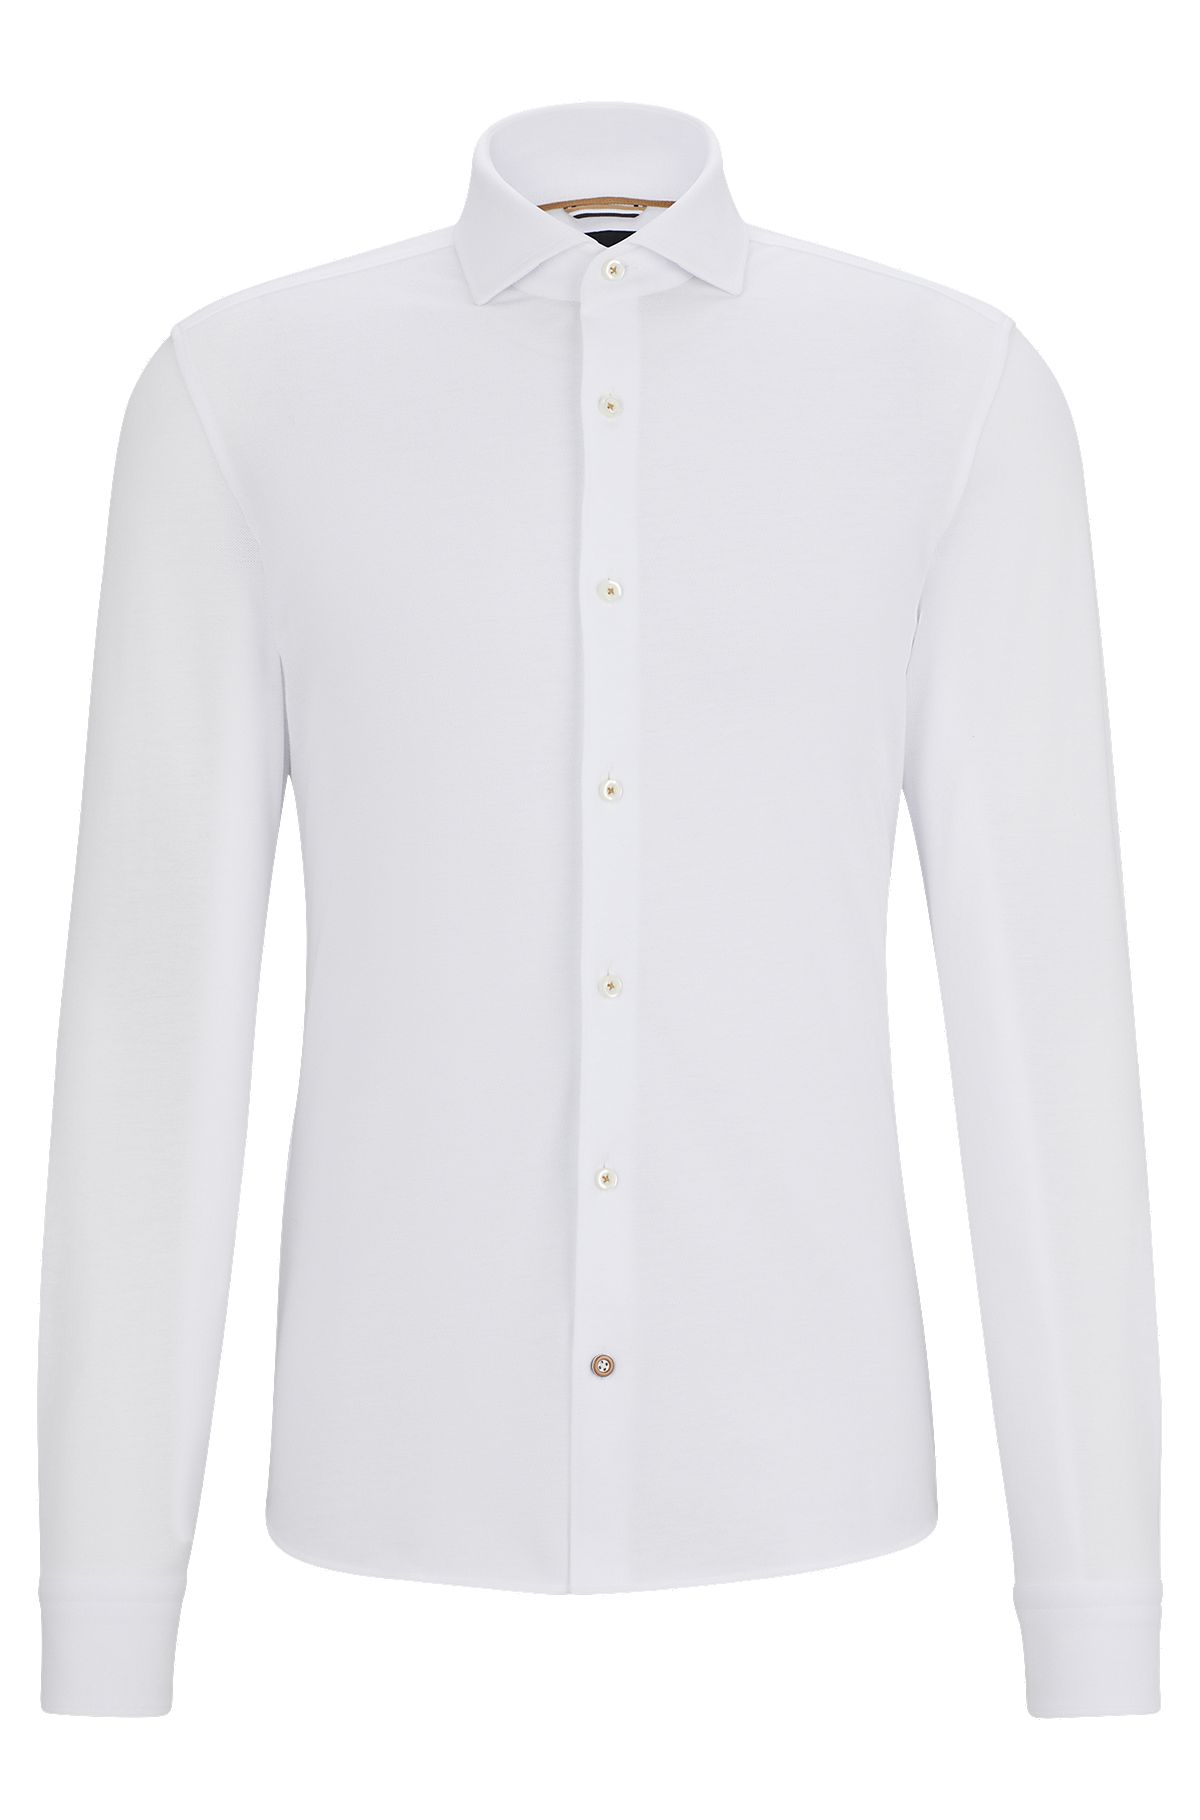 HUGO BOSS - Jolie chemise blanc / beige - Taille 15,45 / 40 - TRES